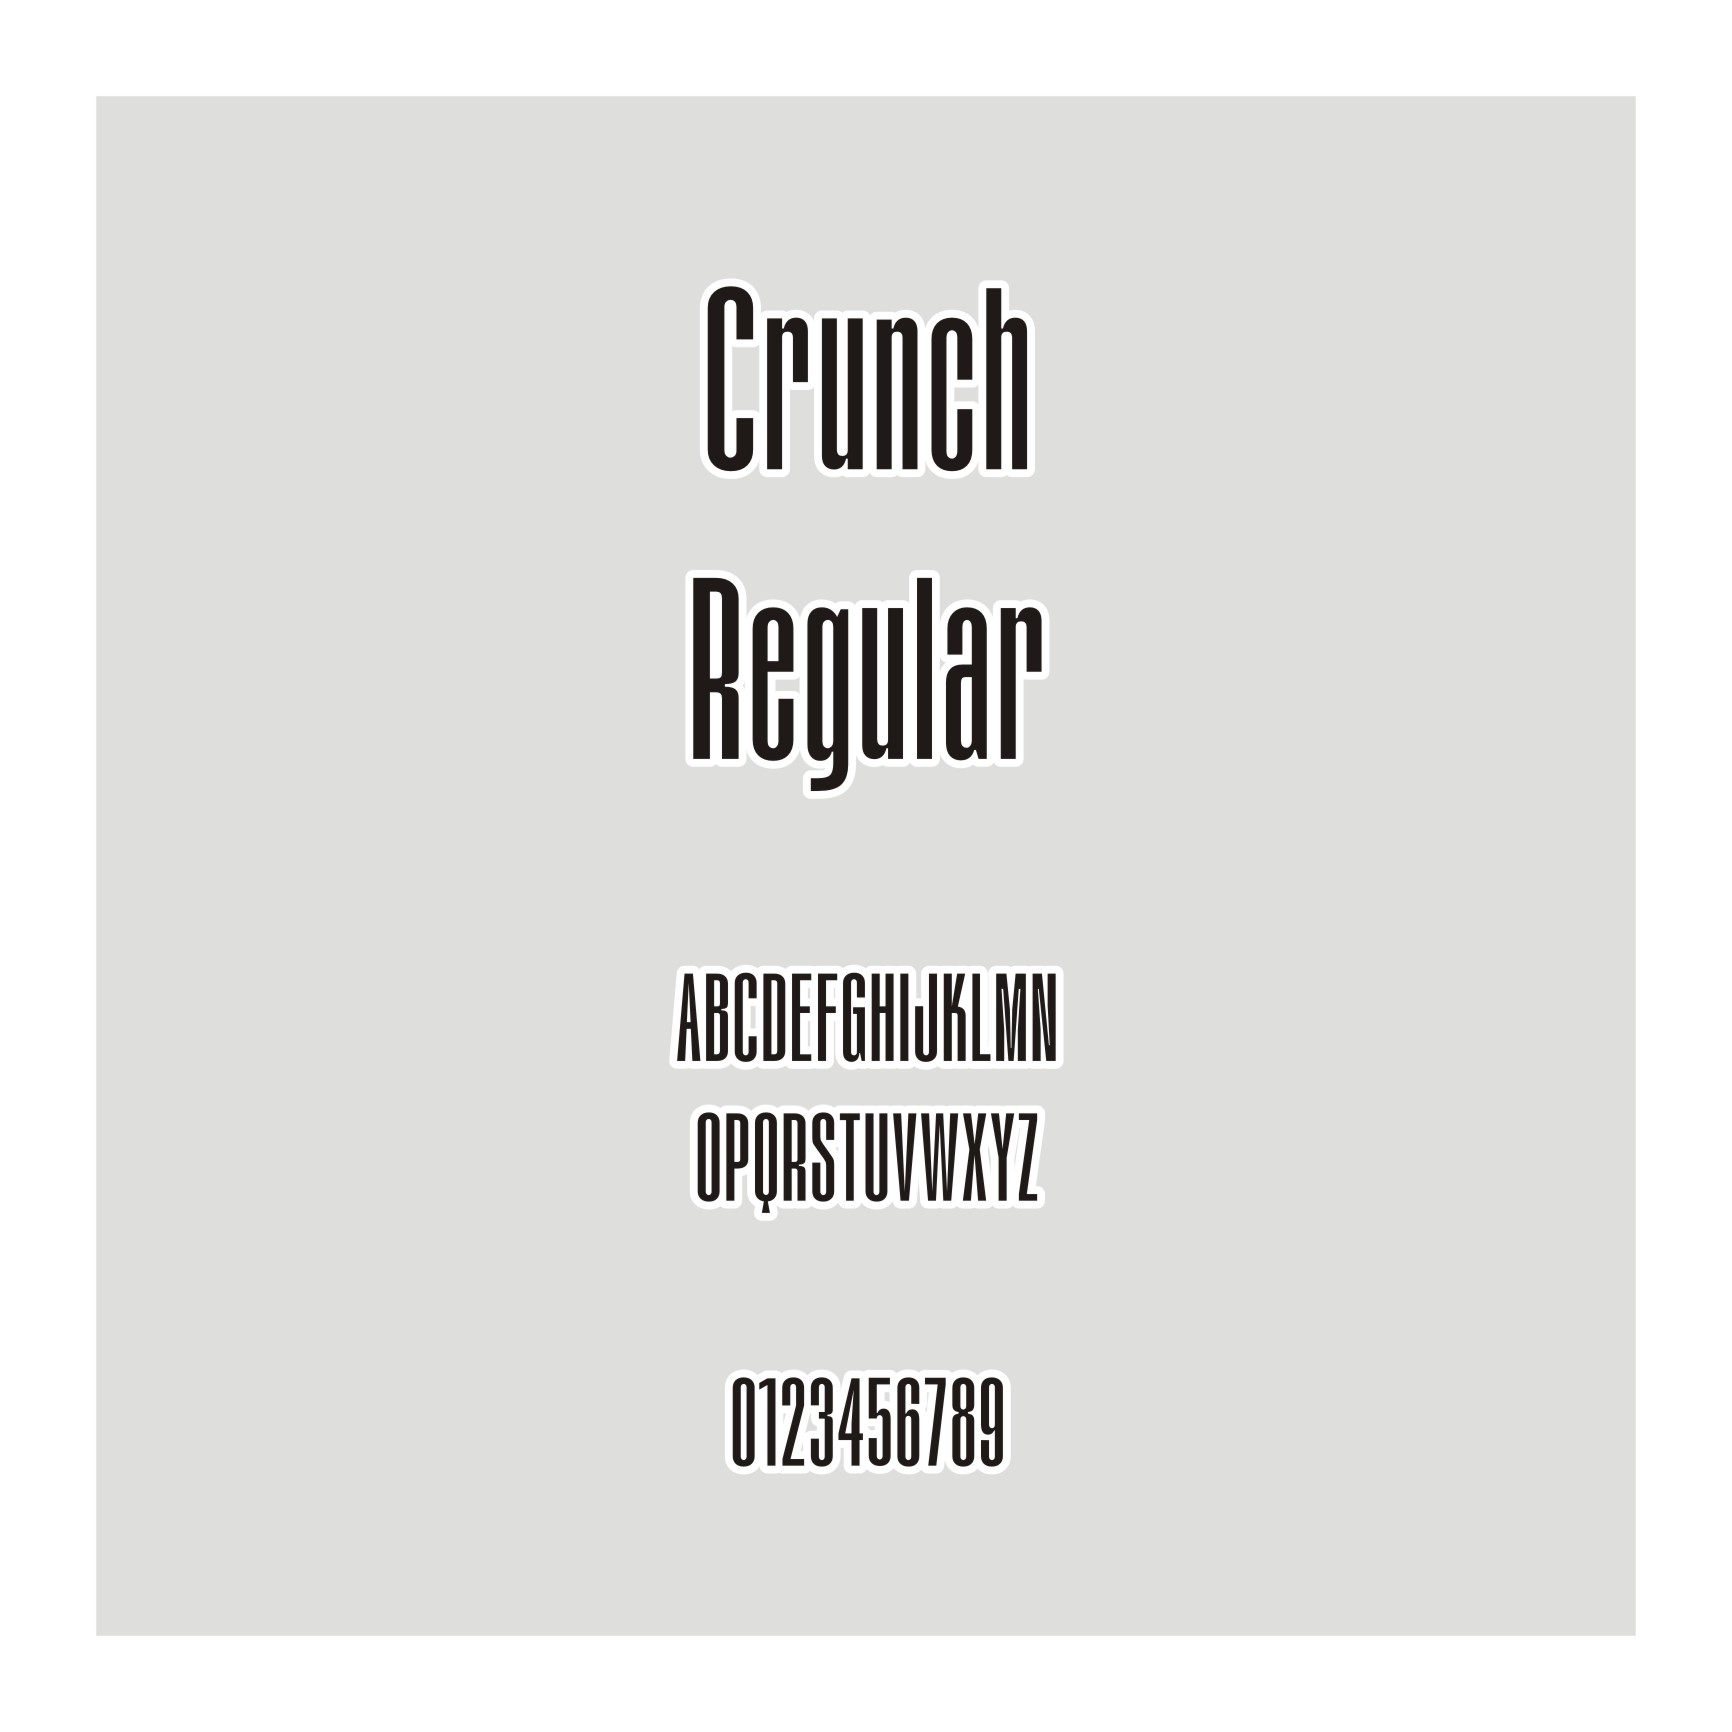 Crunch Regular